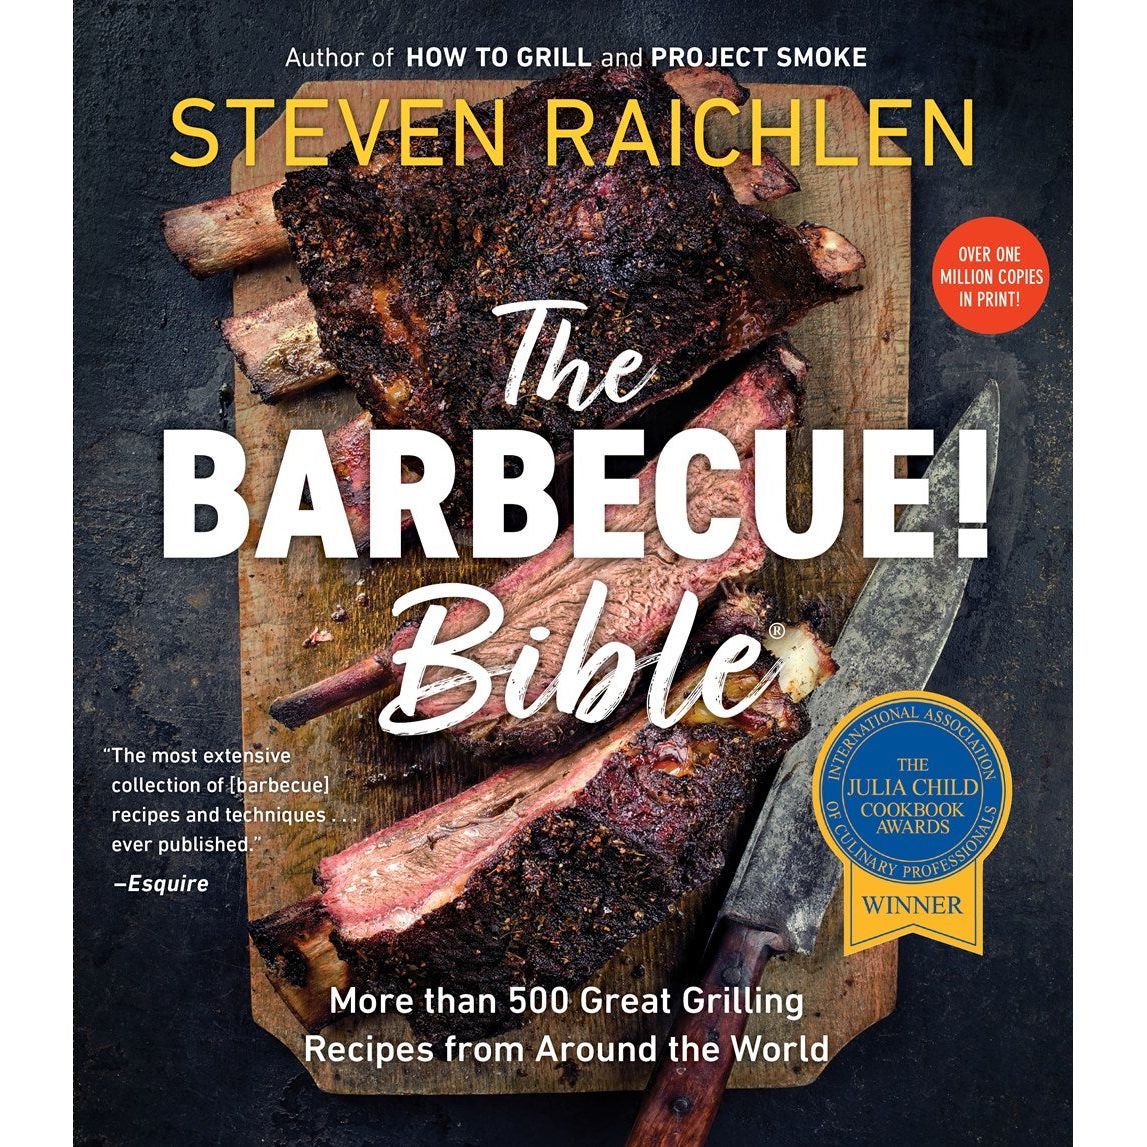 The Barbecue! Bible (Steven Raichlen)